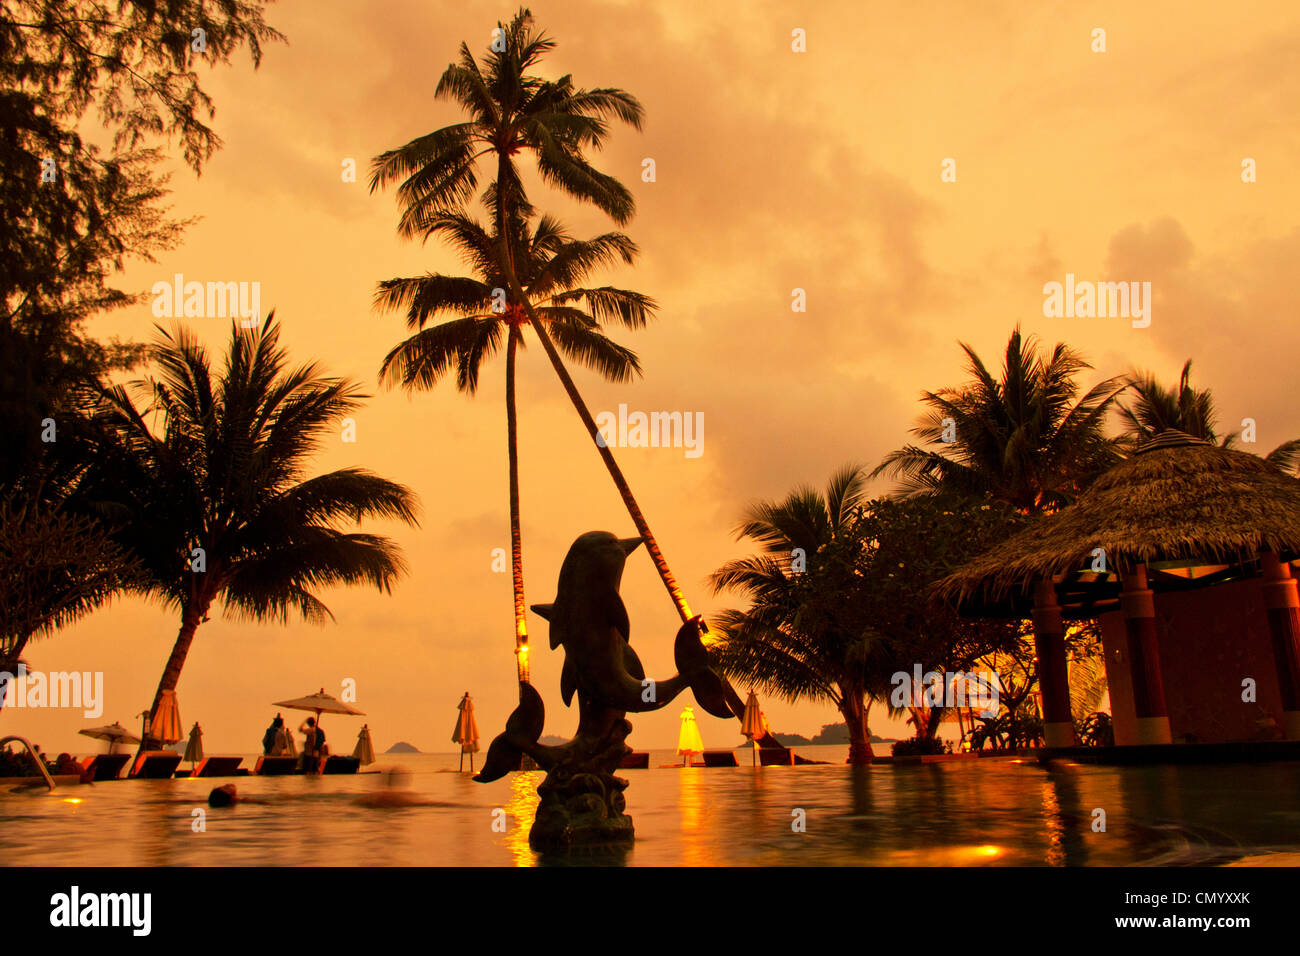 Tropicana Resort and Spa, pool at sunset, Klong Prao Beach, Ko Chang, Thailand Stock Photo